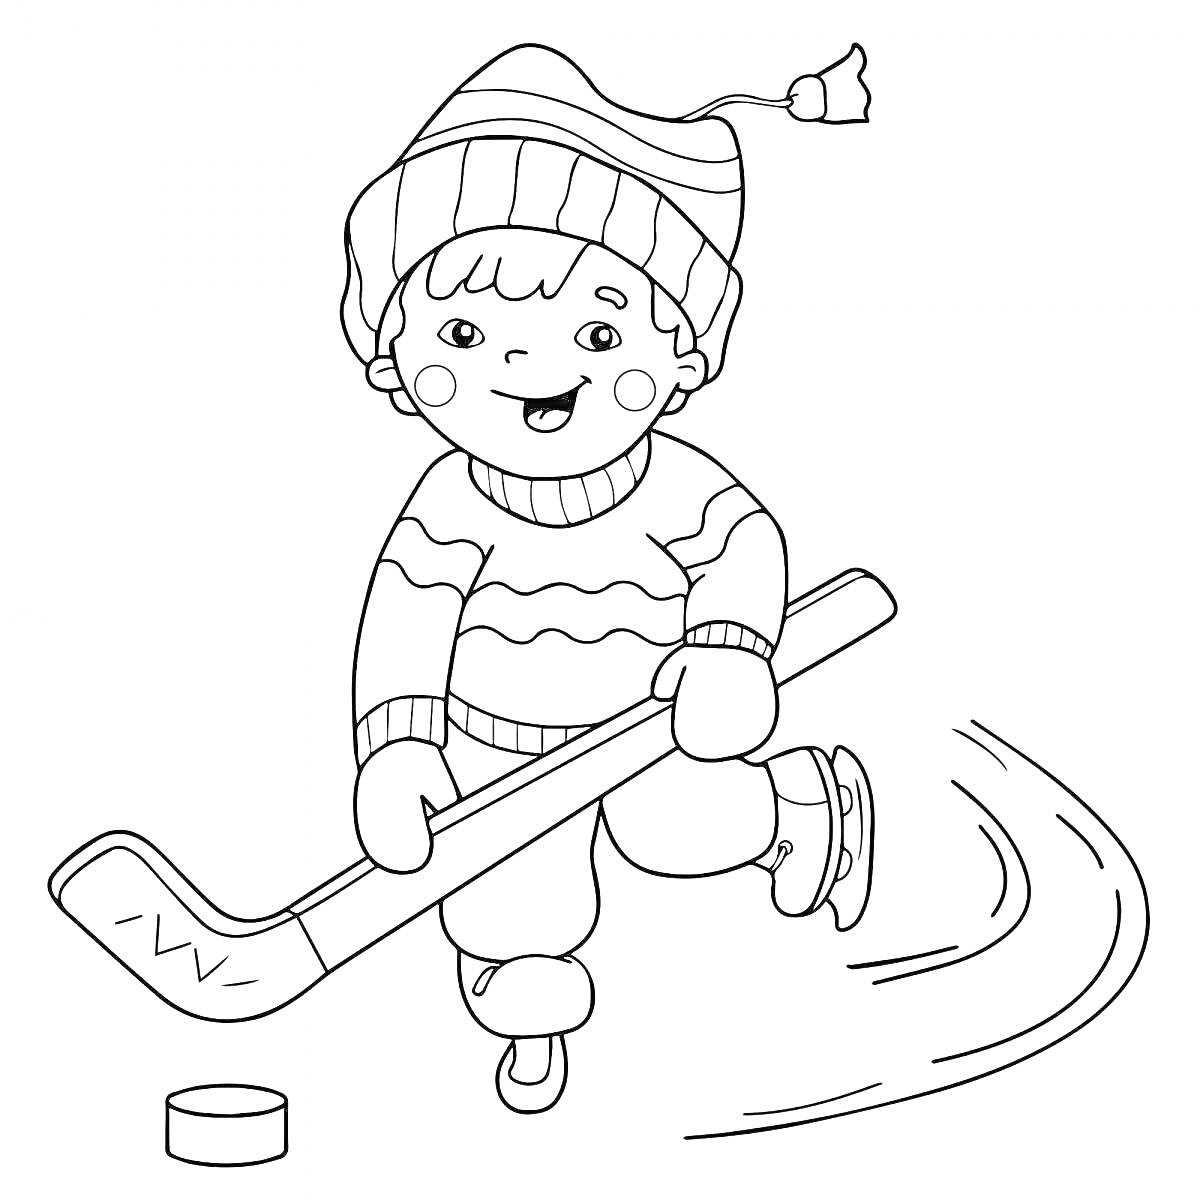 Раскраска Ребенок в шапке и свитере играет в хоккей, держа клюшку и катаясь на коньках рядом с шайбой.